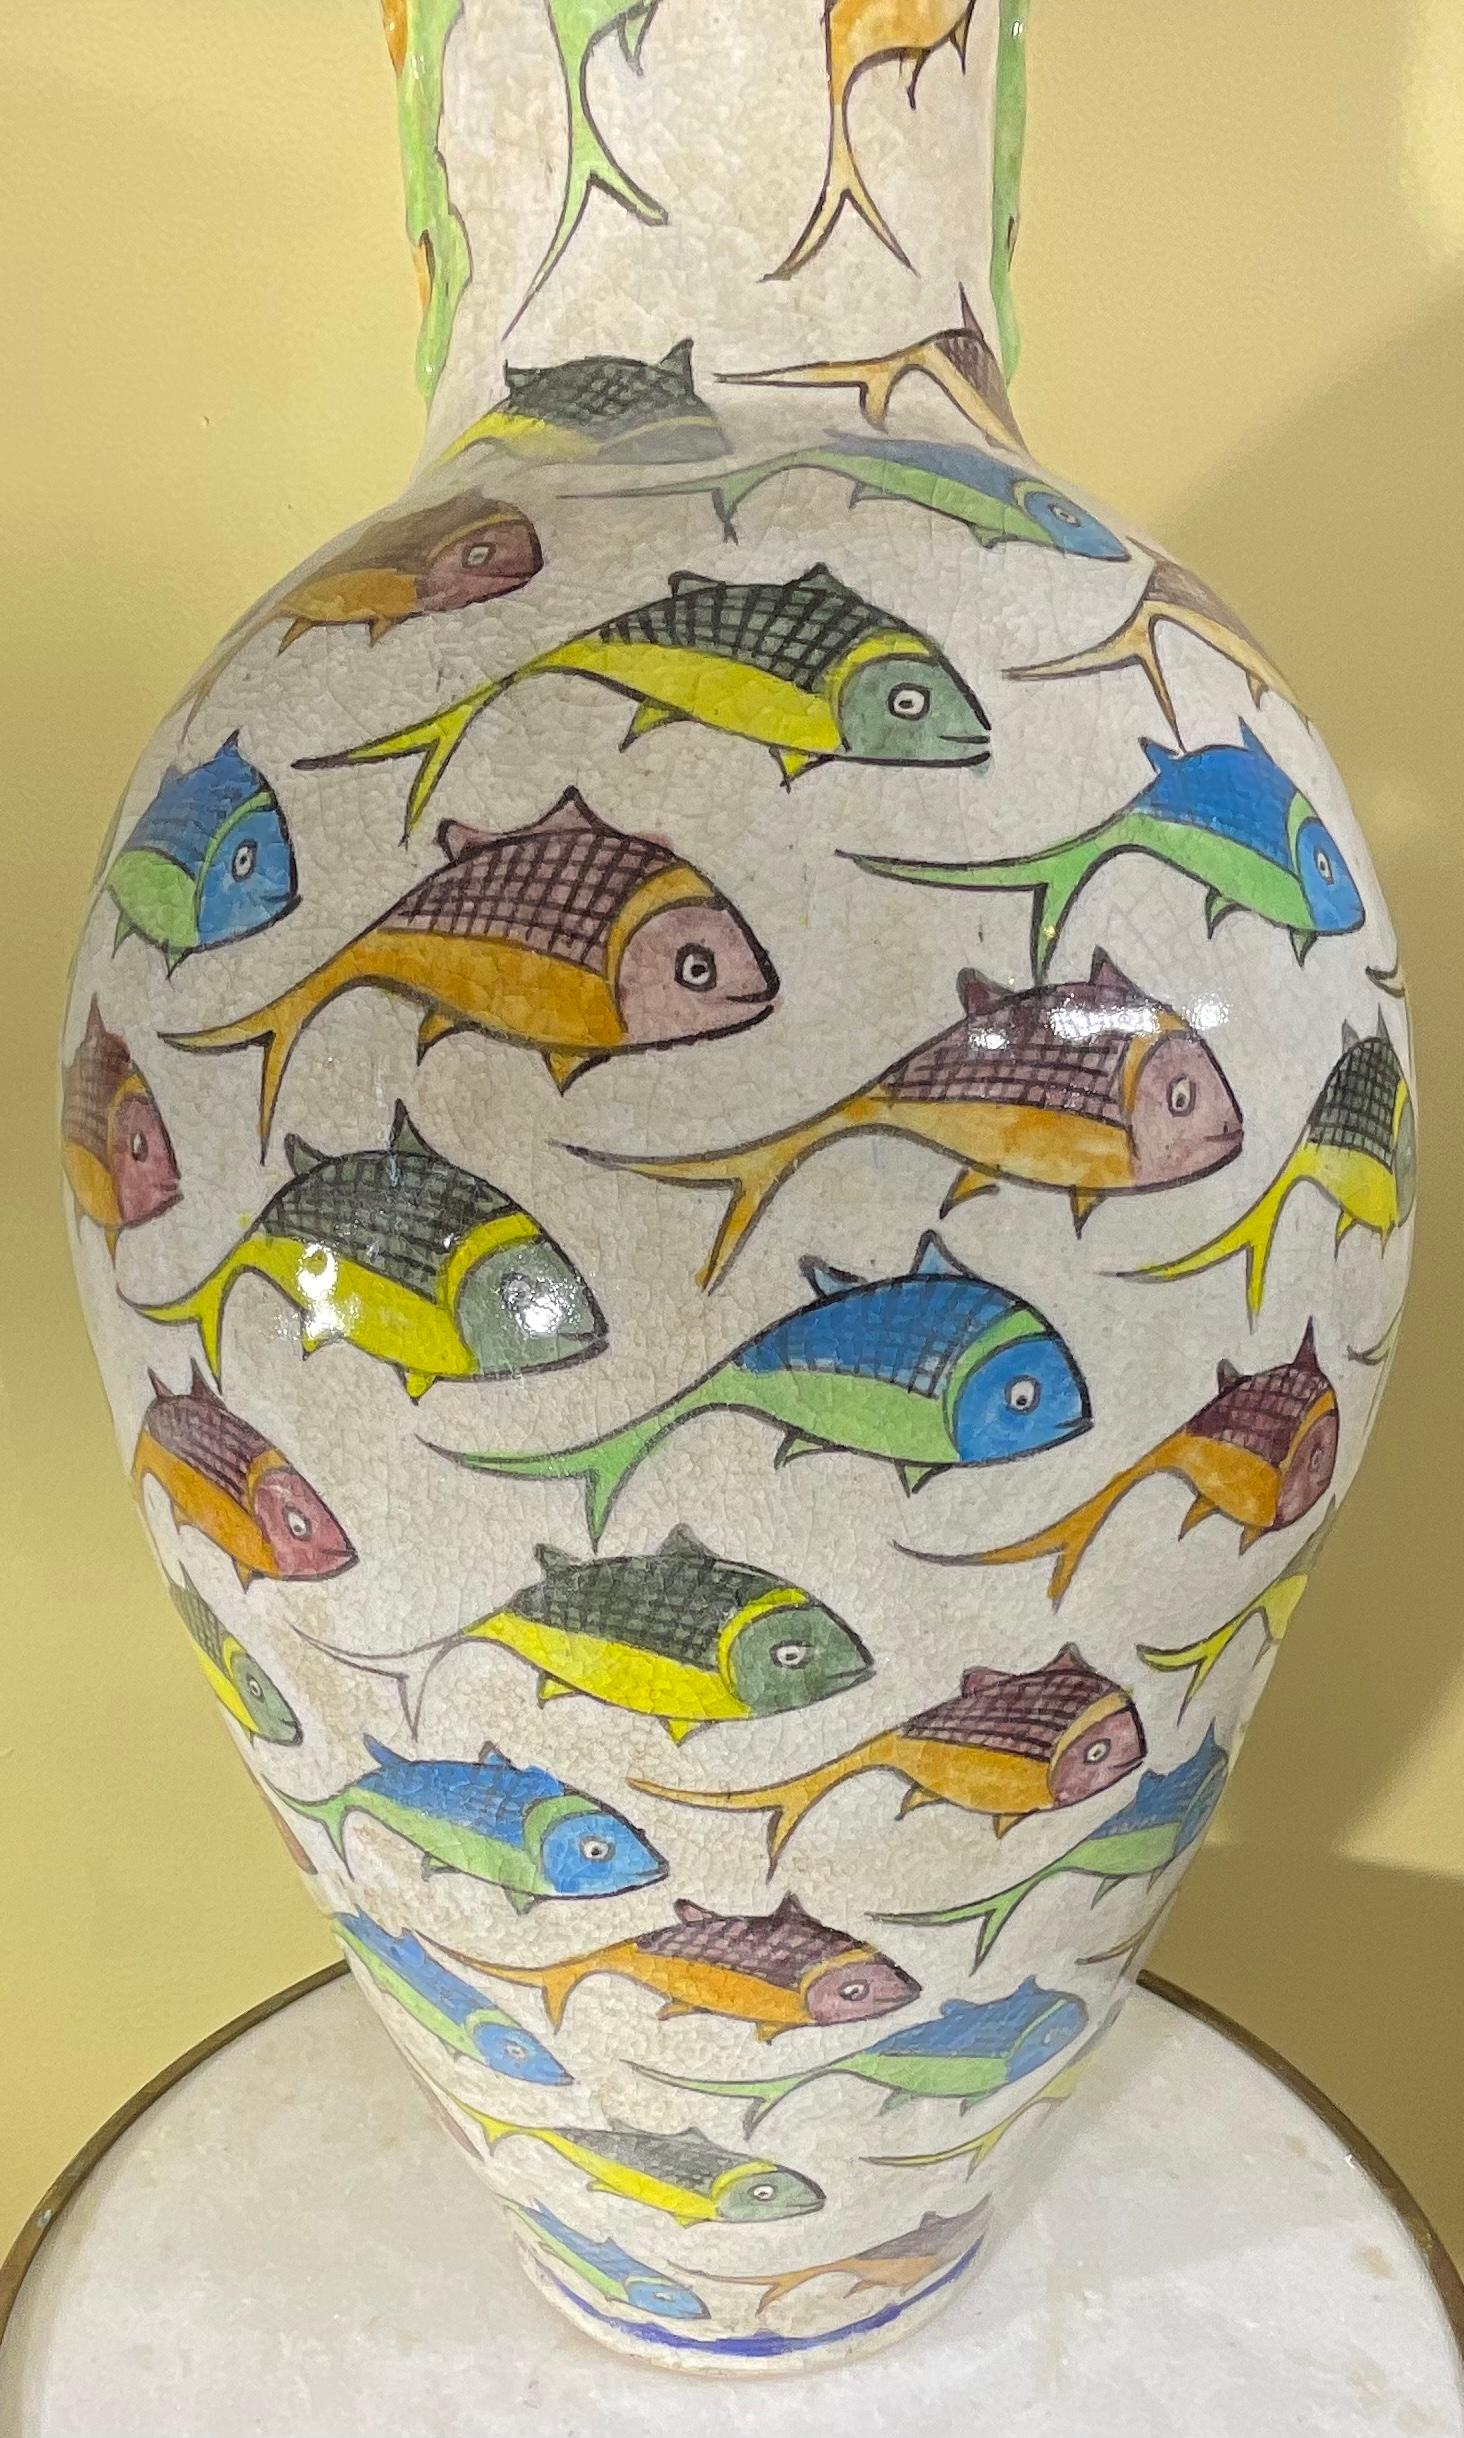 Schöne persische Keramikvase, handbemalt und glasiert mit buntem Fischmotiv auf cremefarbenem Hintergrund.
 Großartiges Kunstobjekt zum Ausstellen.